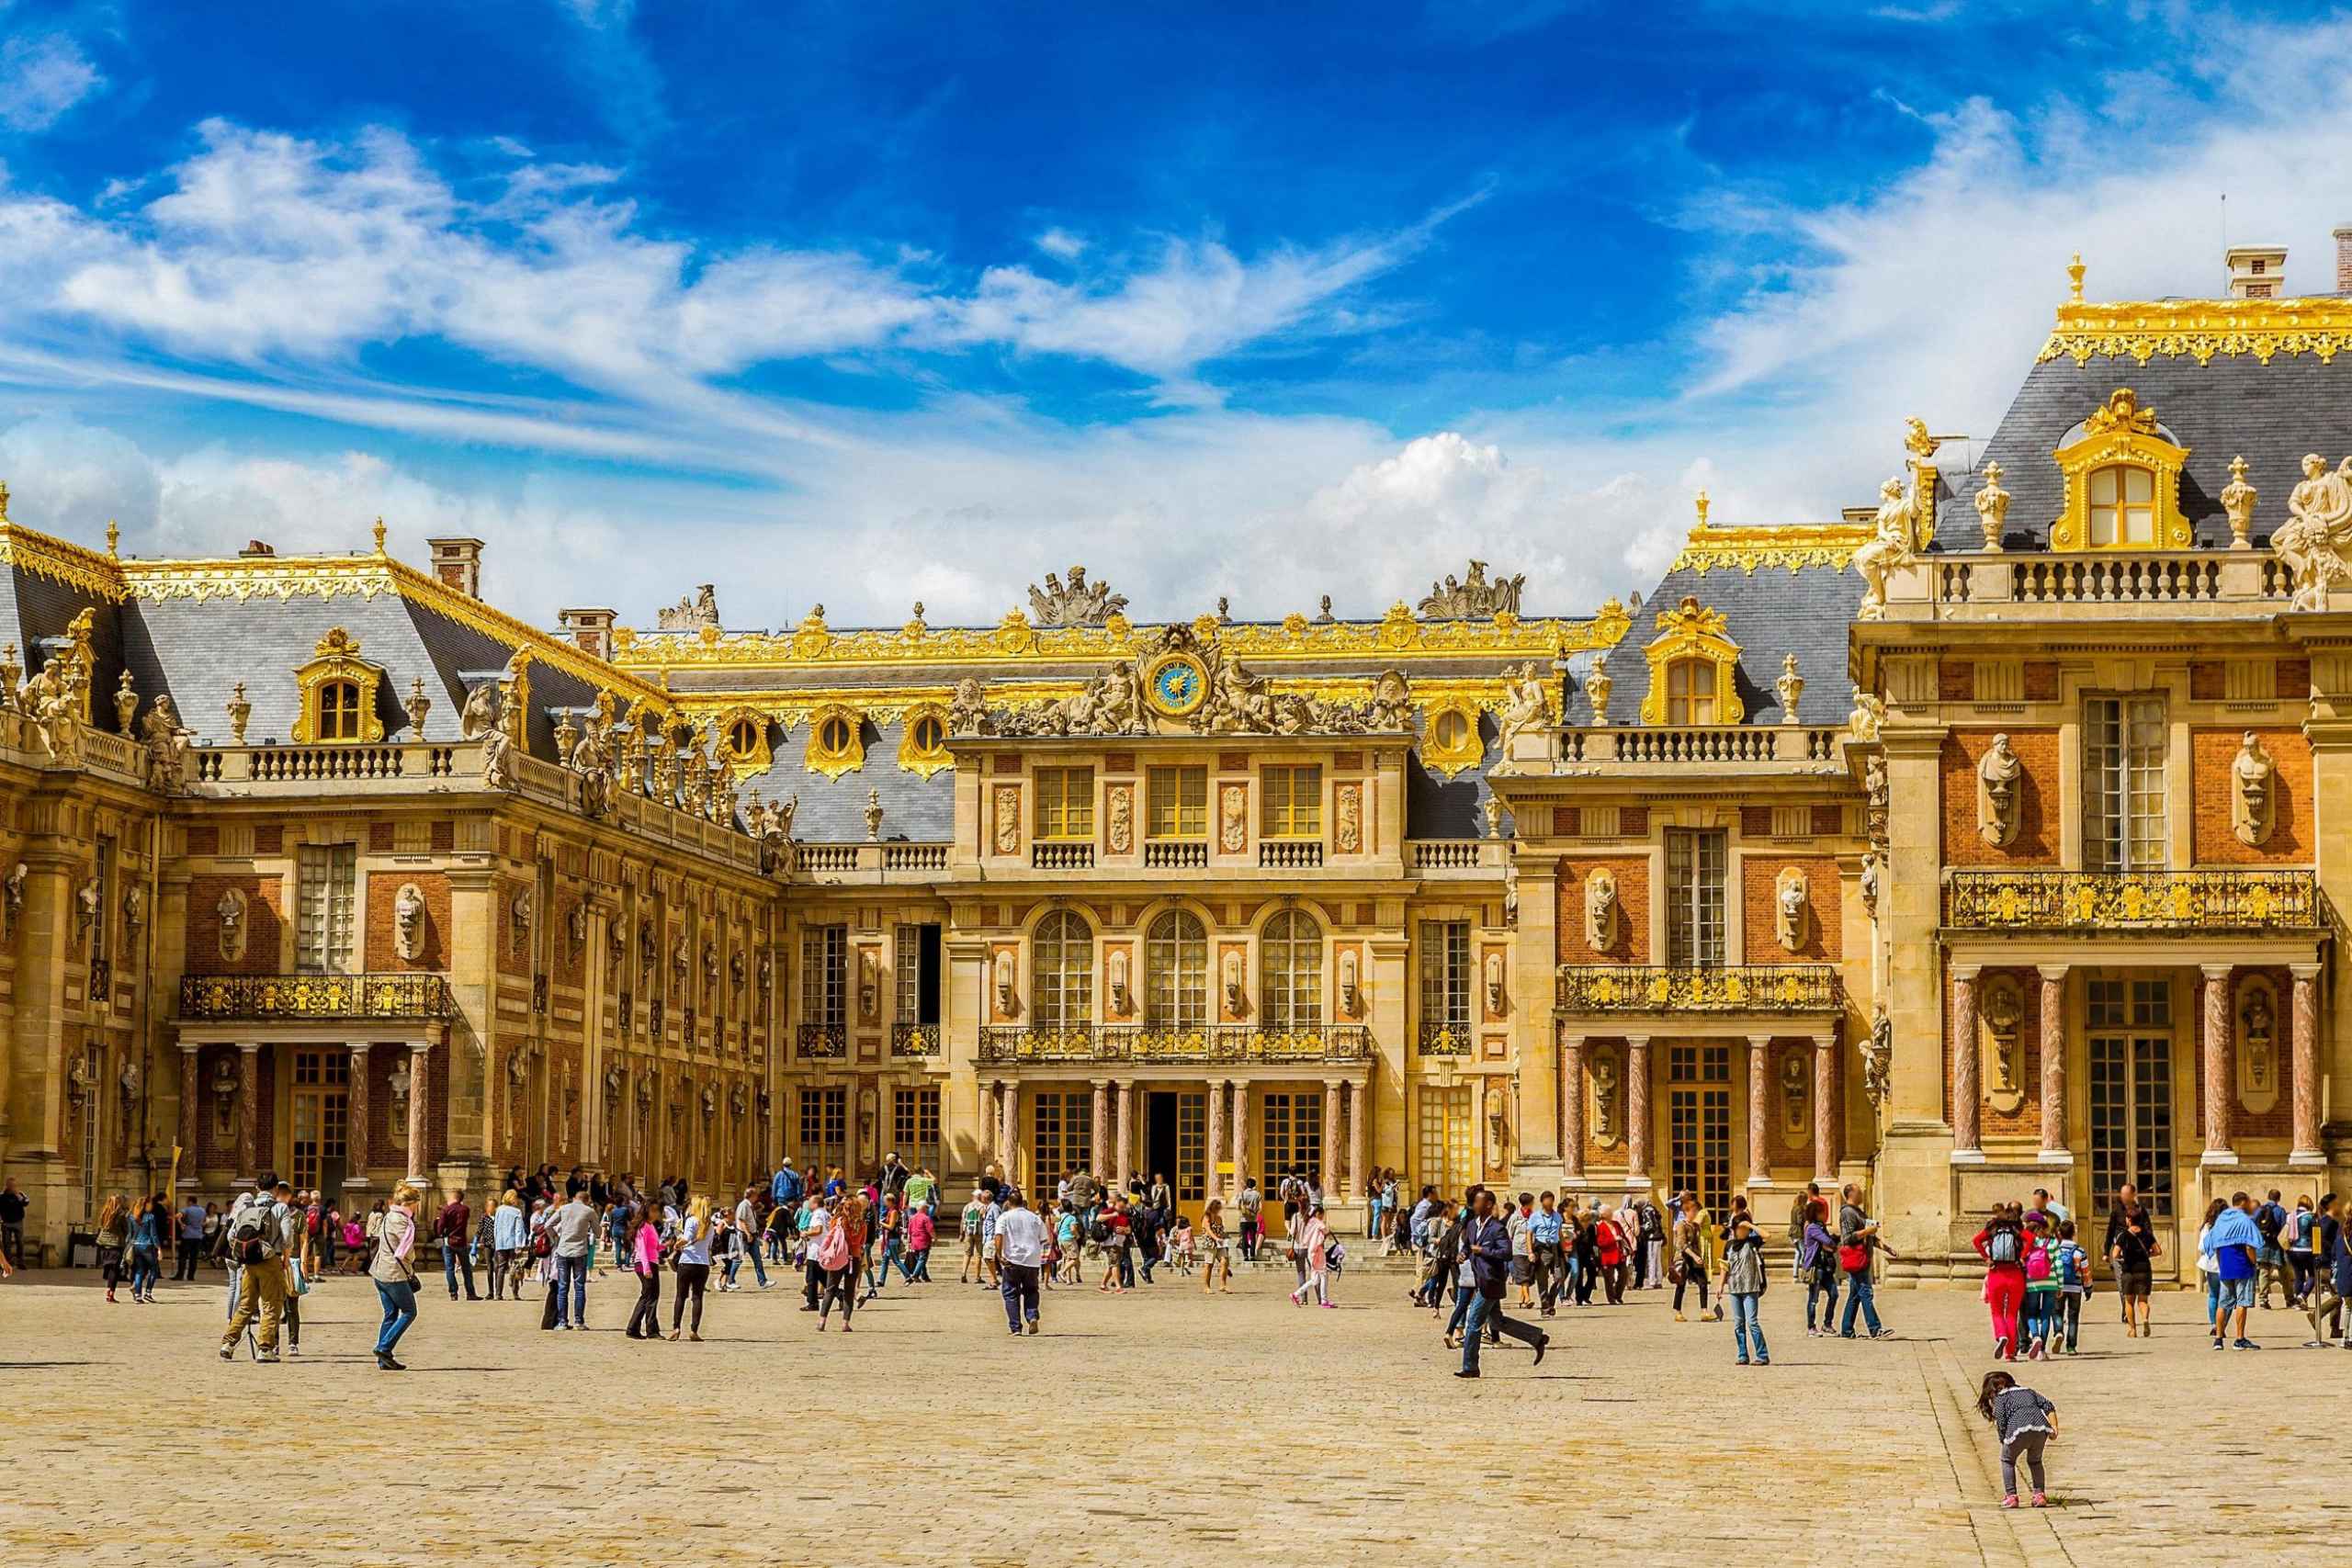 Chateau versailles. Версальский дворец в Париже. Версальский дворец Версаль Франция. Достопримечательности Парижа Версаль. Франция 17 век Версаль.